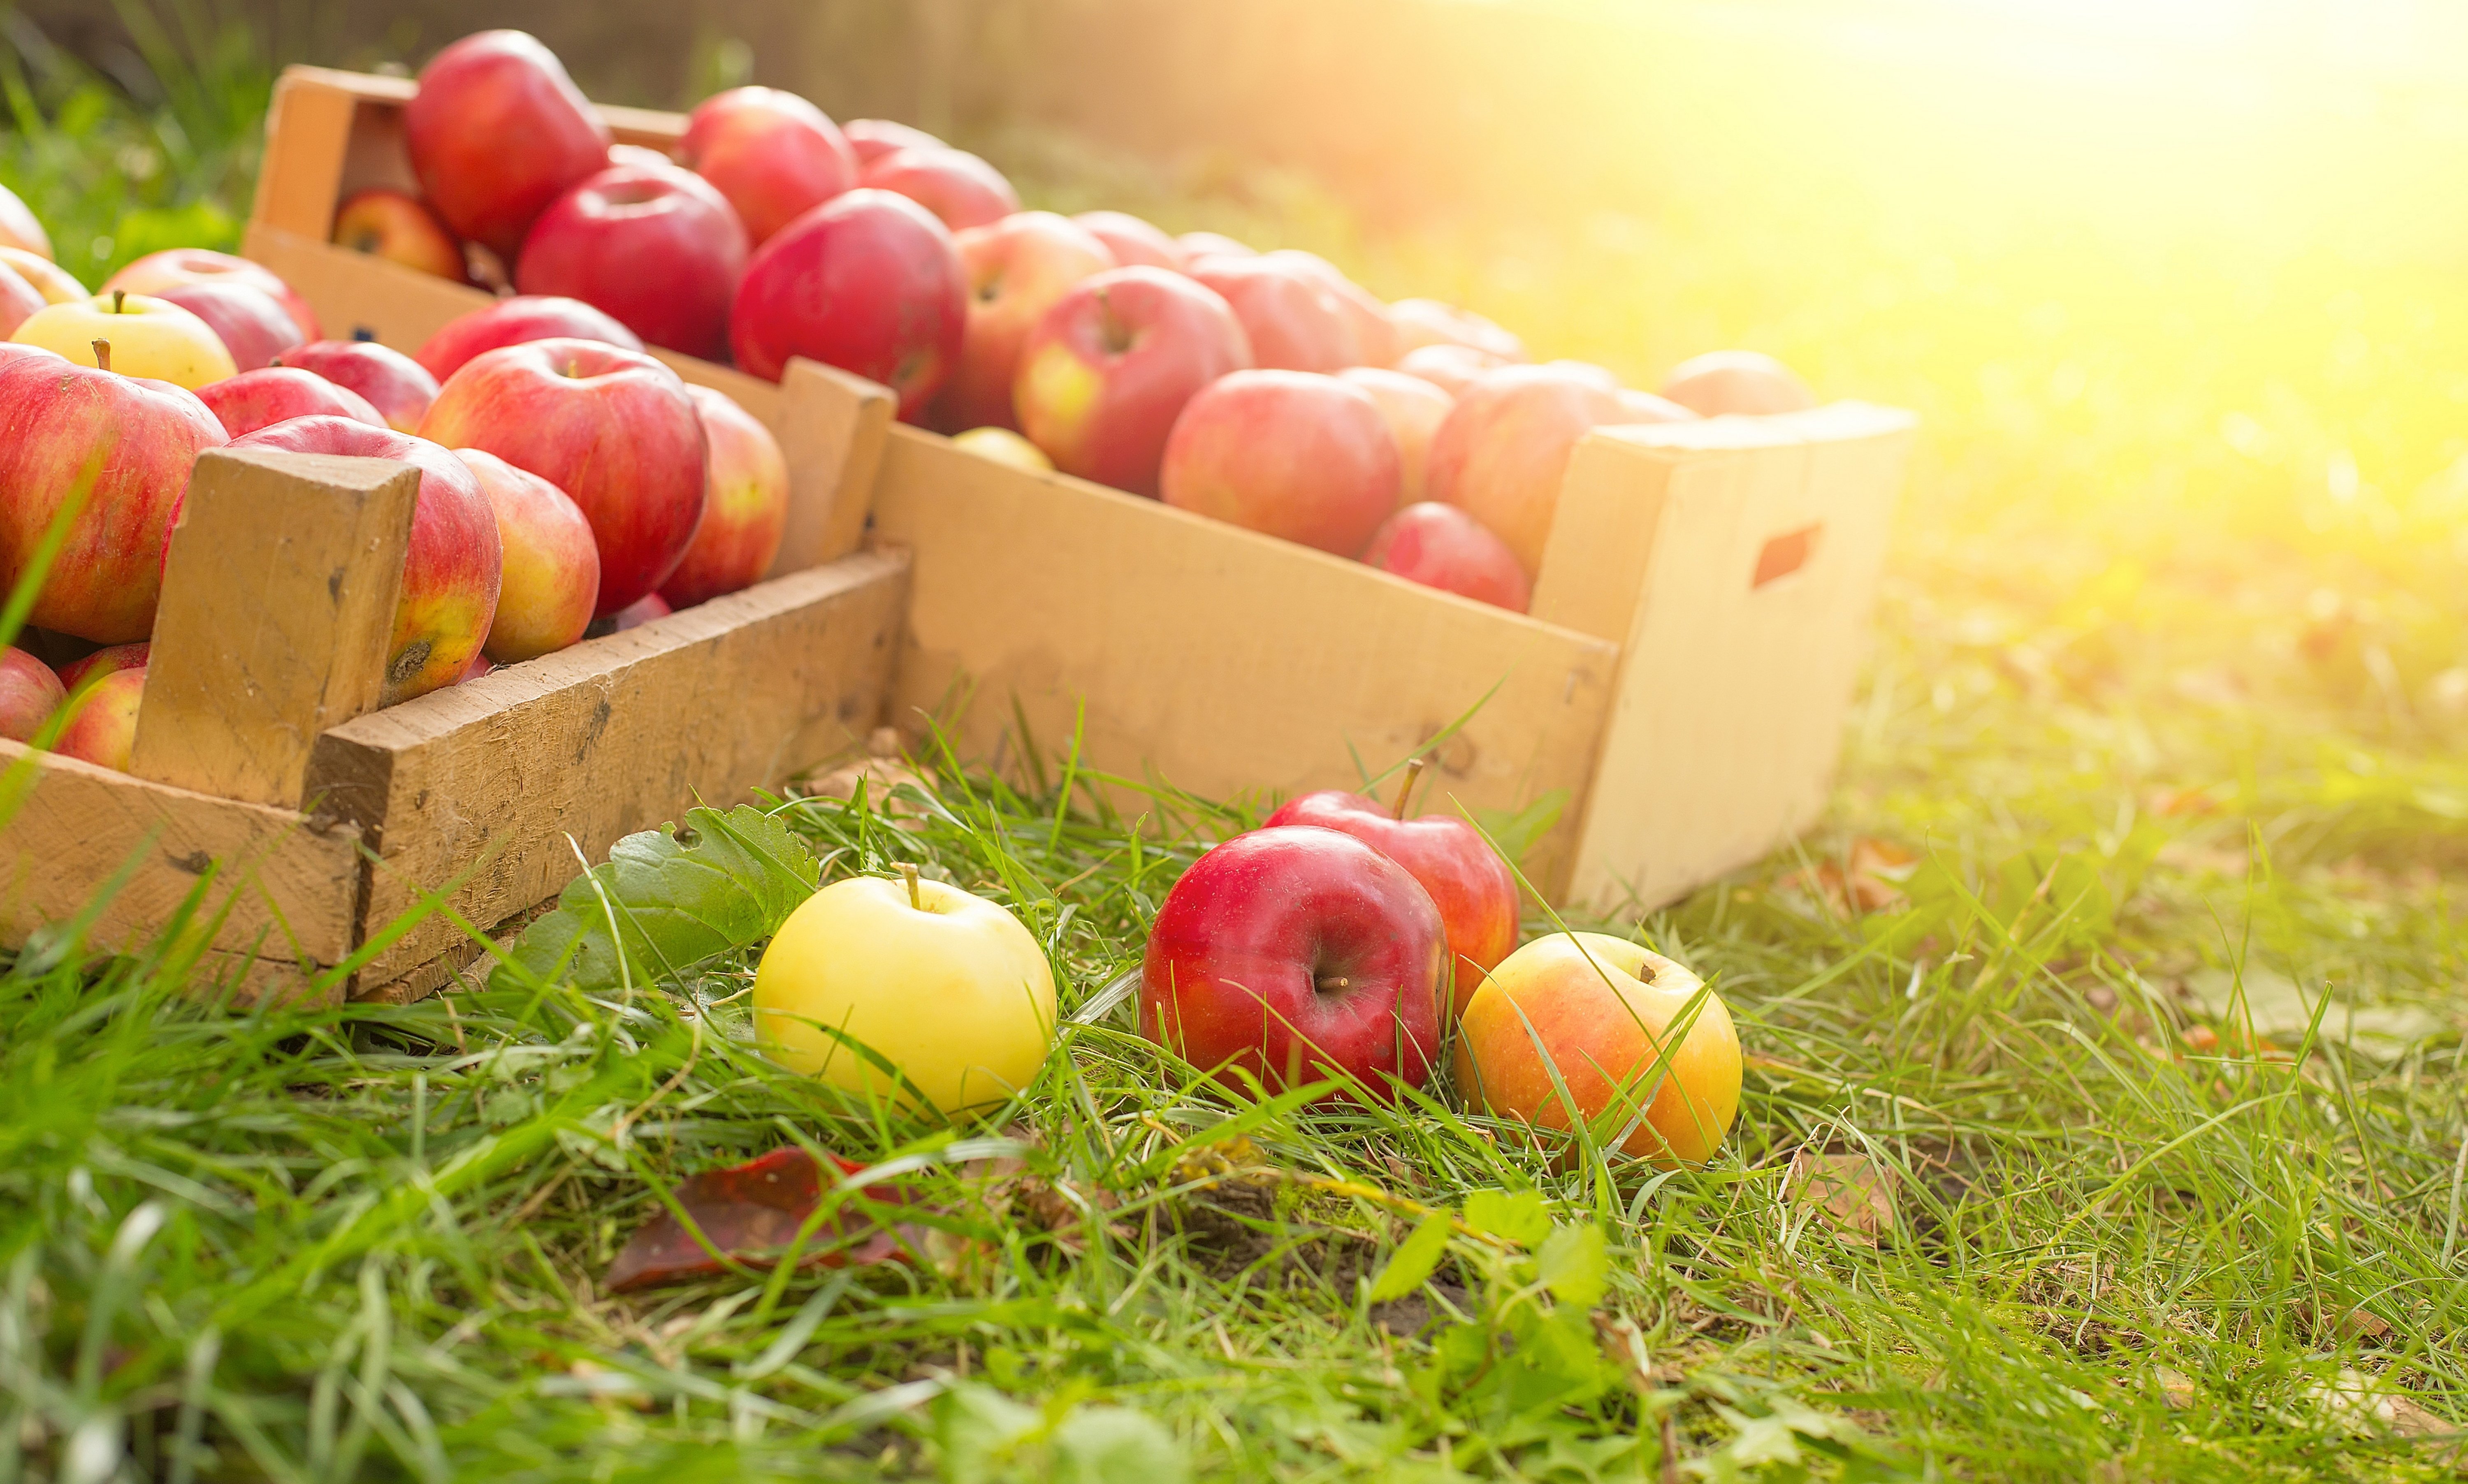 В подарок получить яблоки. Ящик с яблоками. Яблоки в саду. Летний урожай фруктов. Фрукты в ящике.